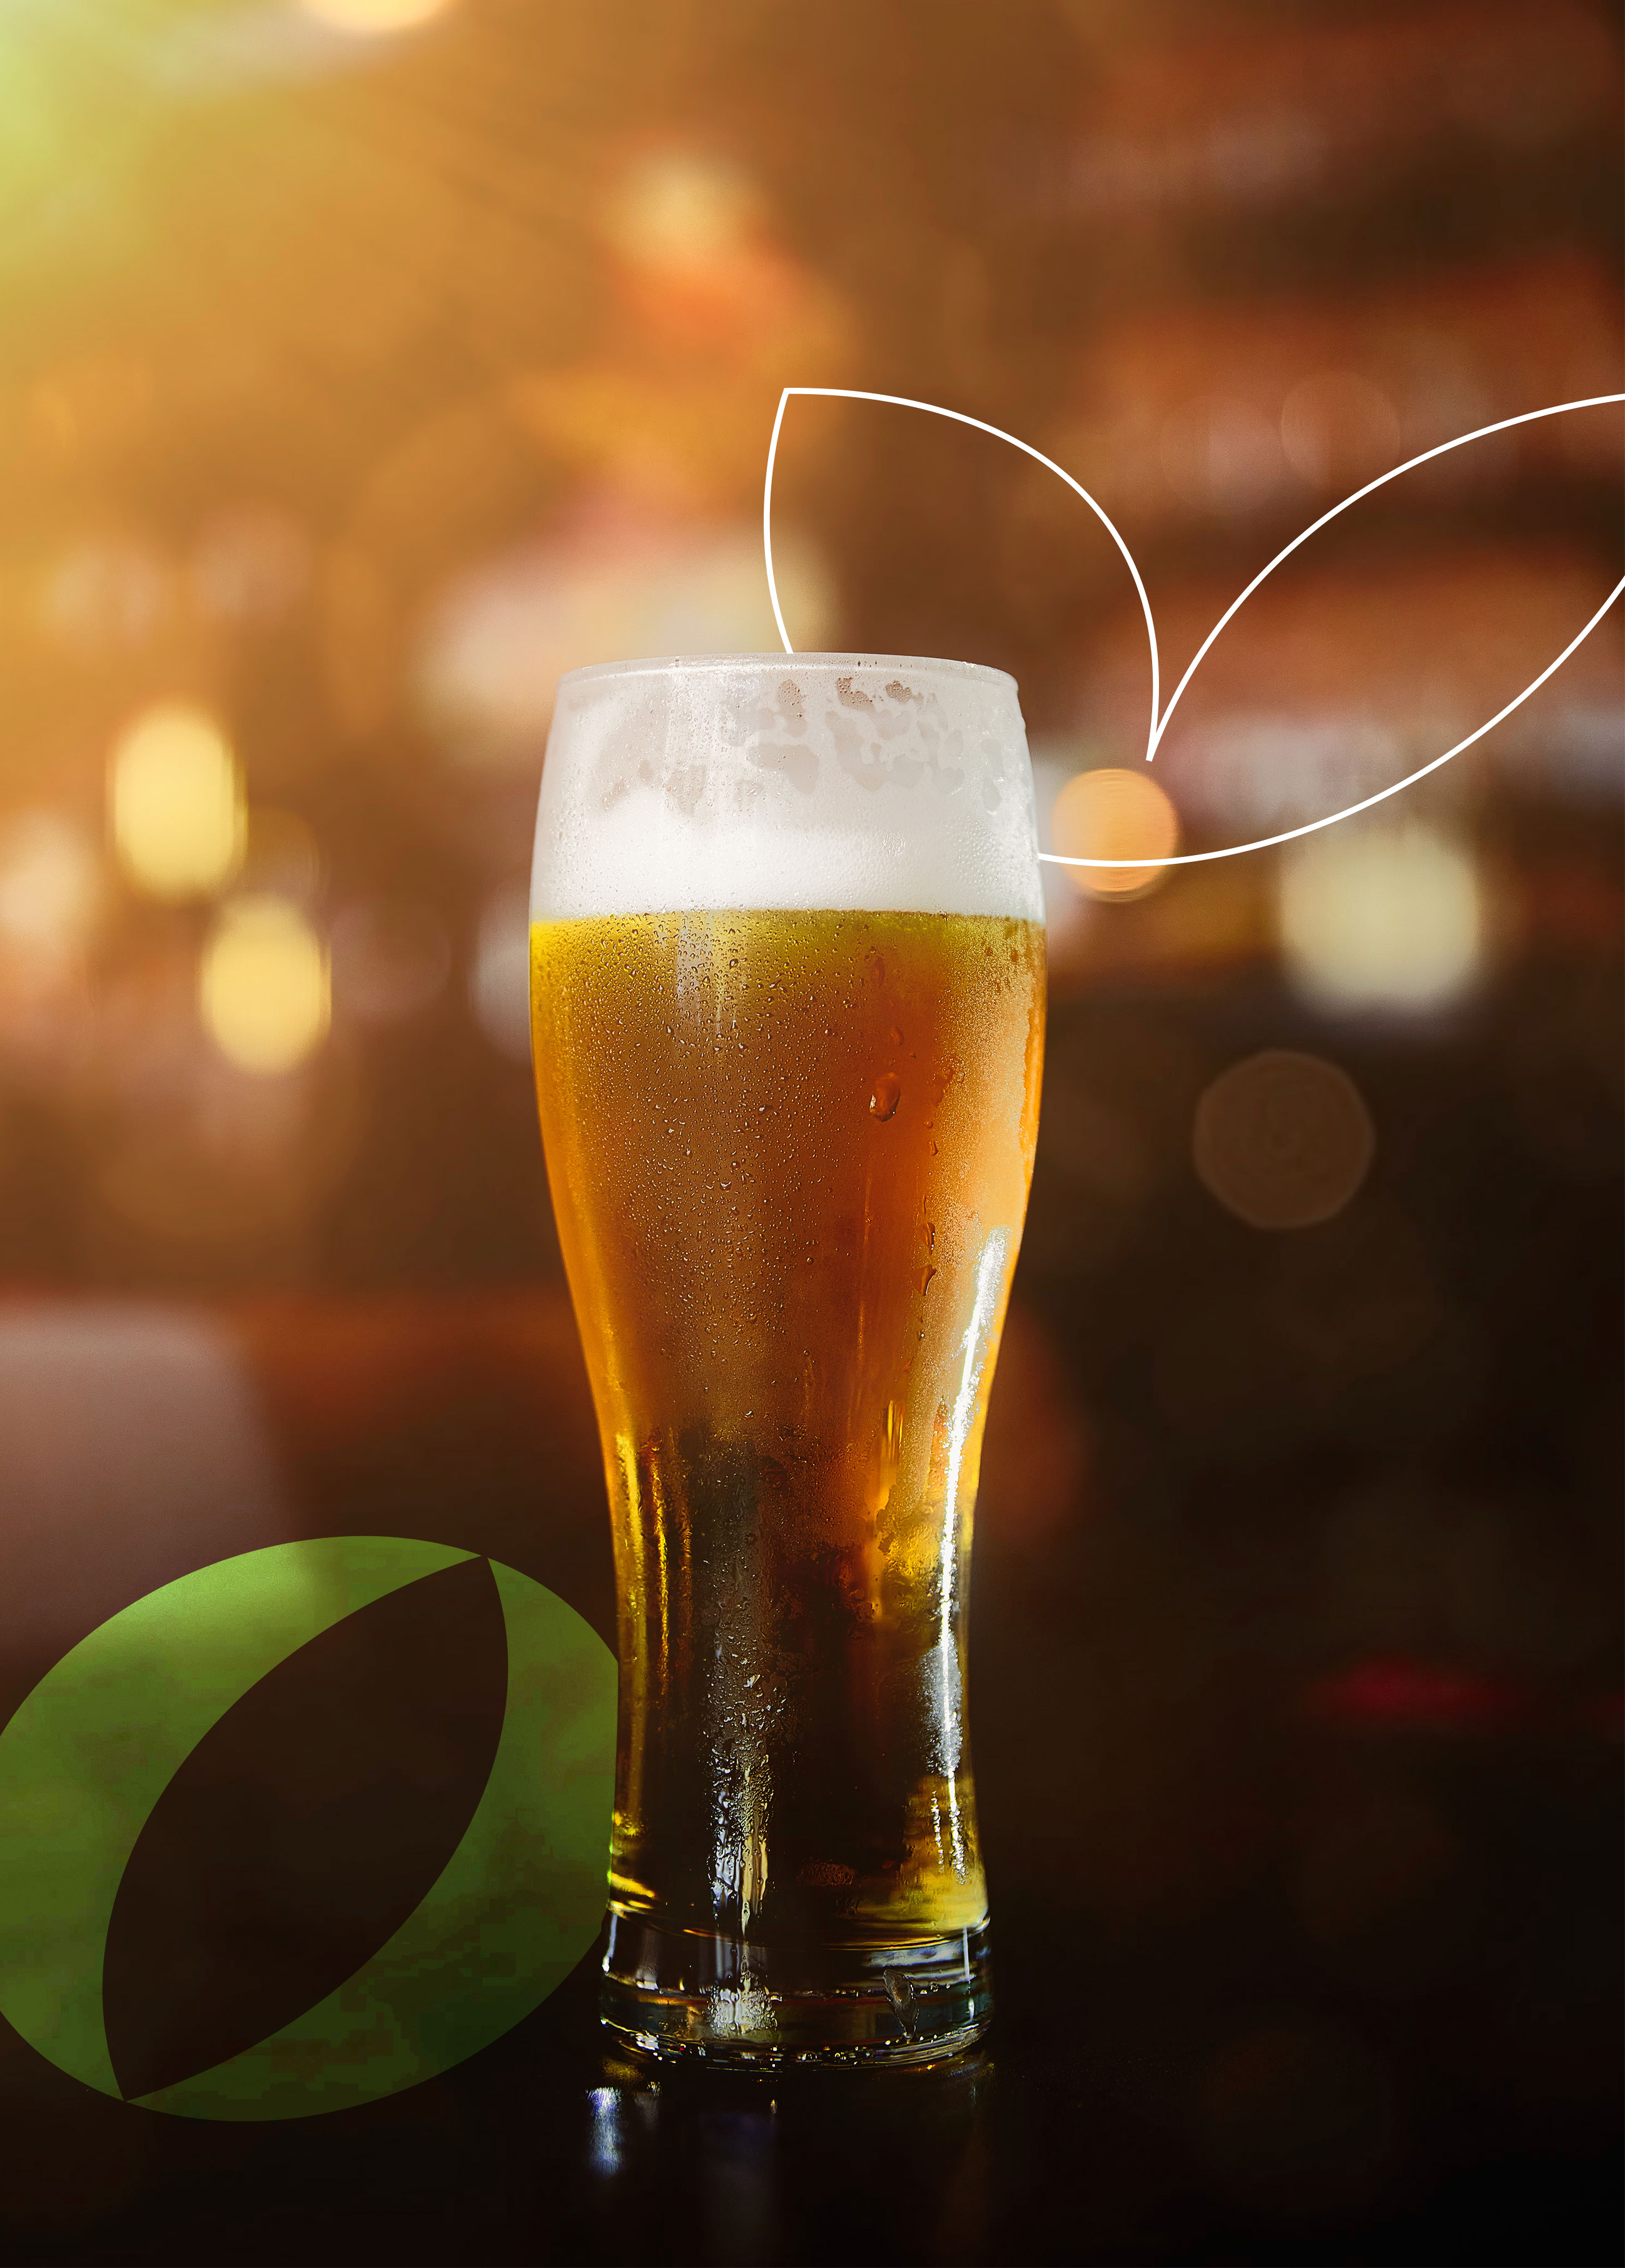 GP comemora o Dia Internacional da Cerveja com campanha “Muito Mais que Cerveja